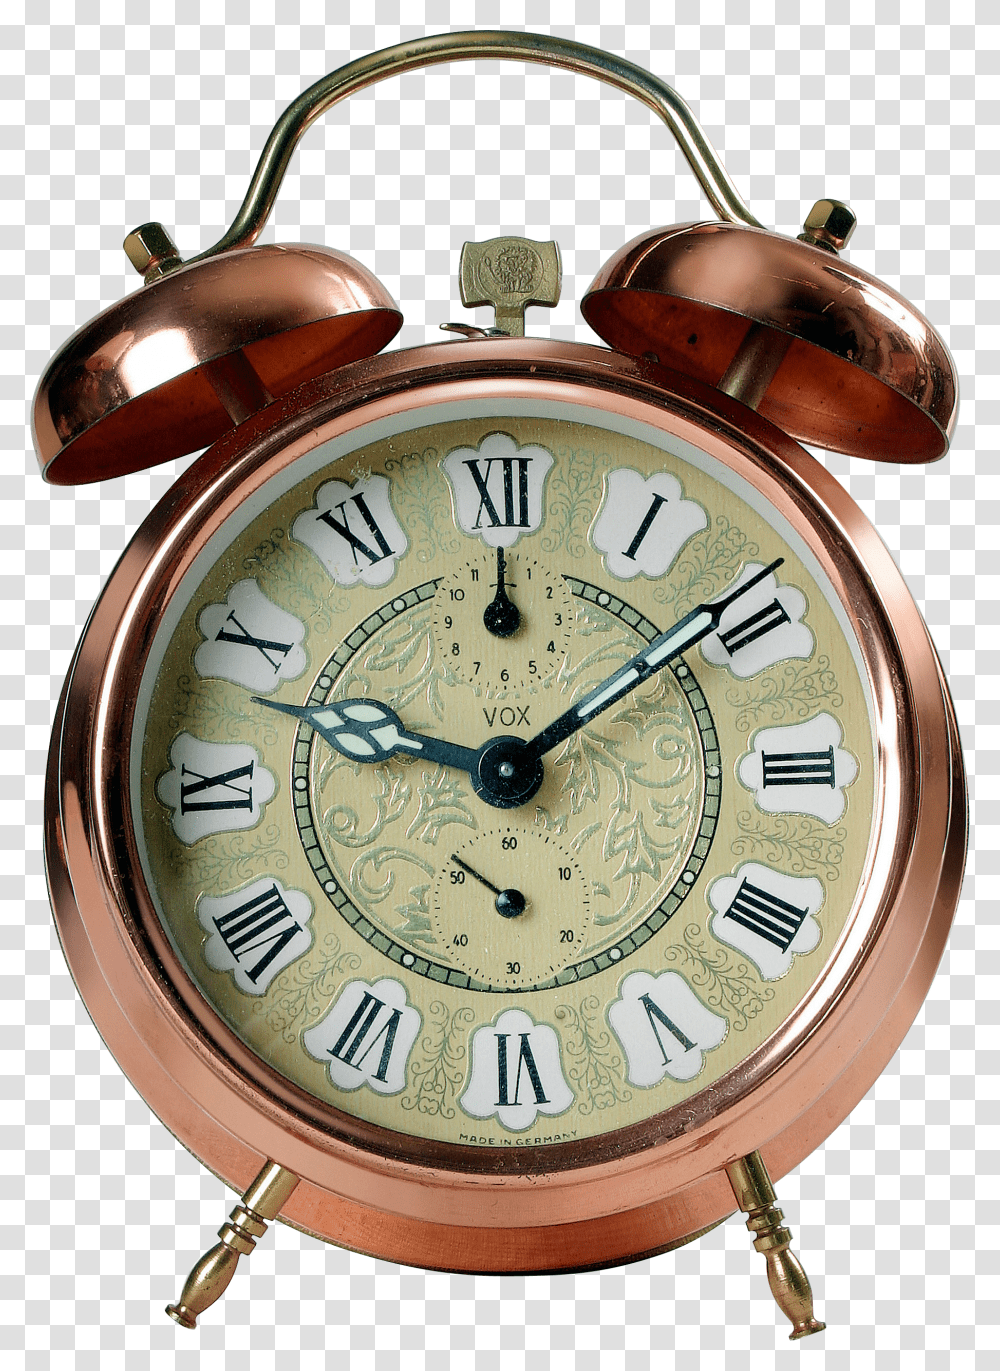 Golden Alarm Clock Image Chasi Budilnik Transparent Png